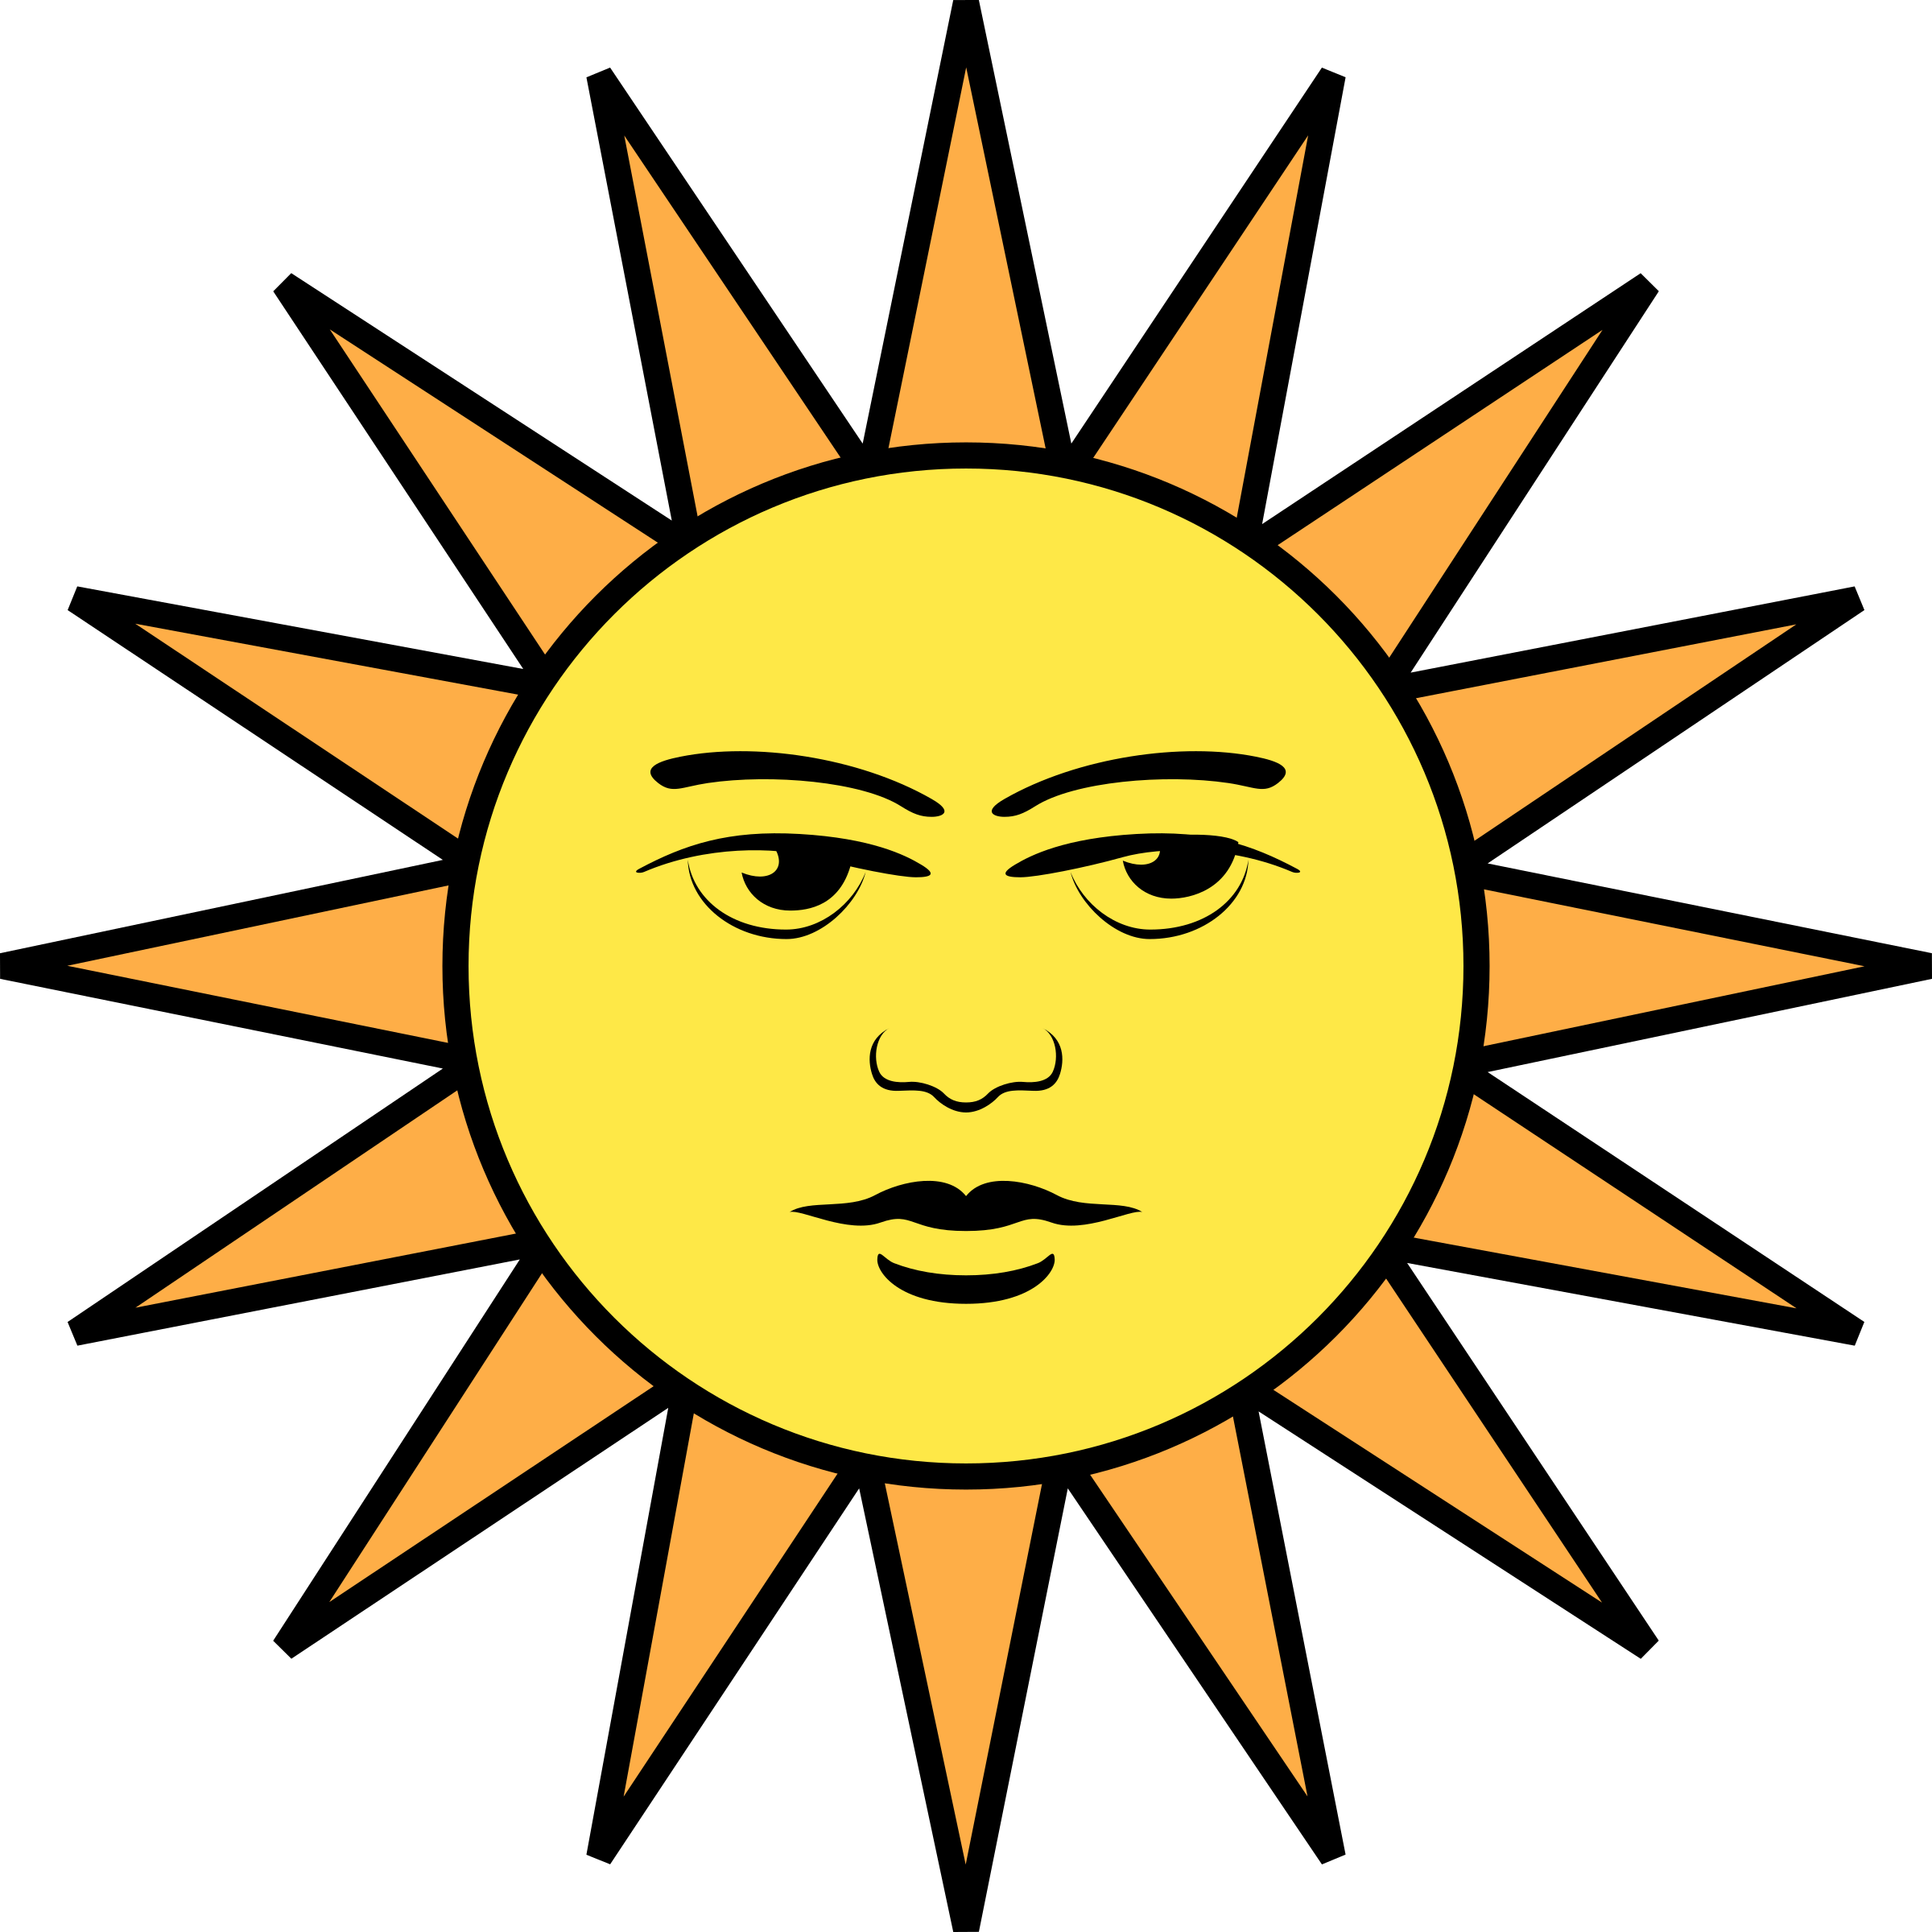 Изображение солнца. Лицом к солнцу. Солнце иллюстрация. Солнышко рисунок. Солнце изображение рисунок